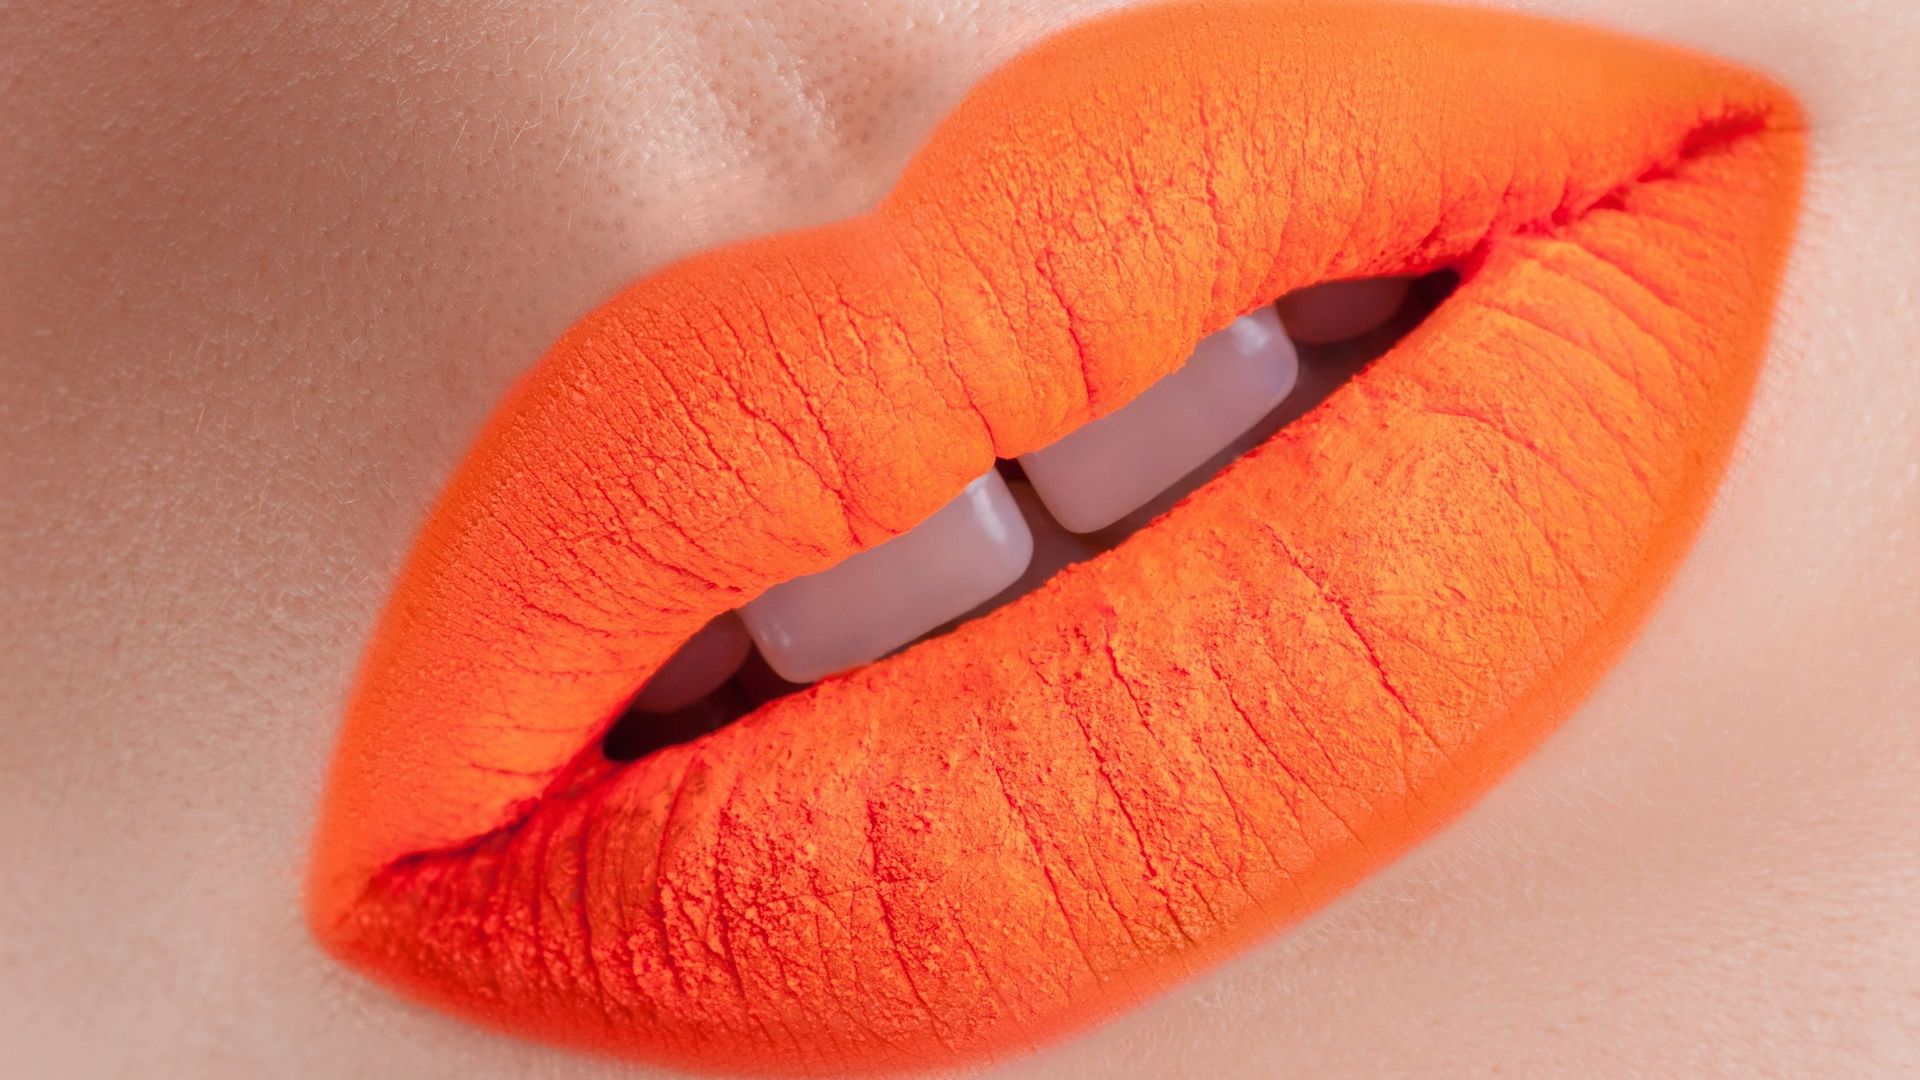 Un orange audacieux habillera vos lèvres dès l'arrivée des beaux jours !